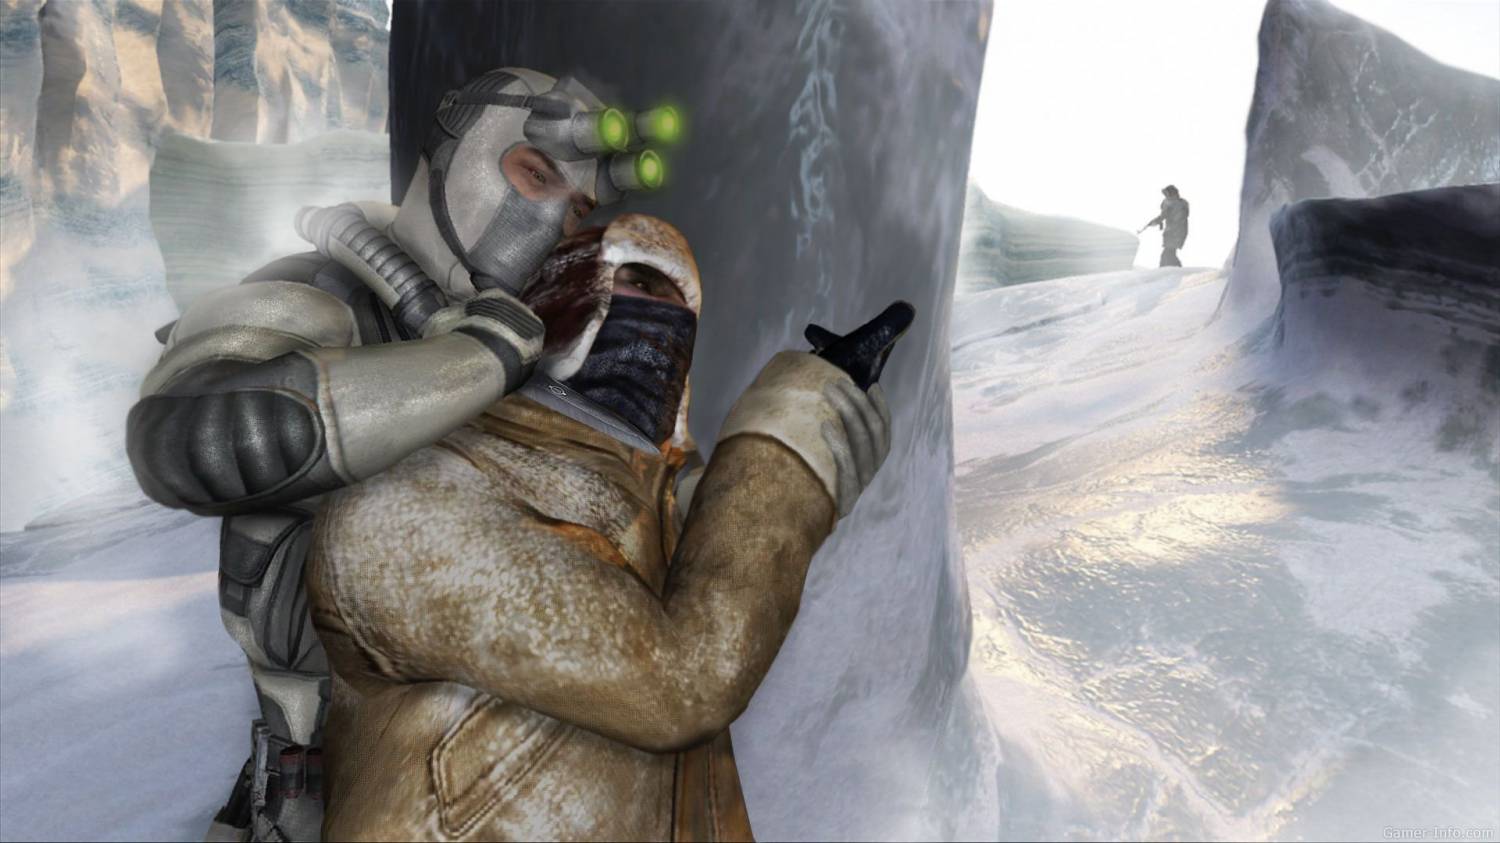 Ubisoft работает над новой игрой из серии Splinter Cell для платформ нового поколения